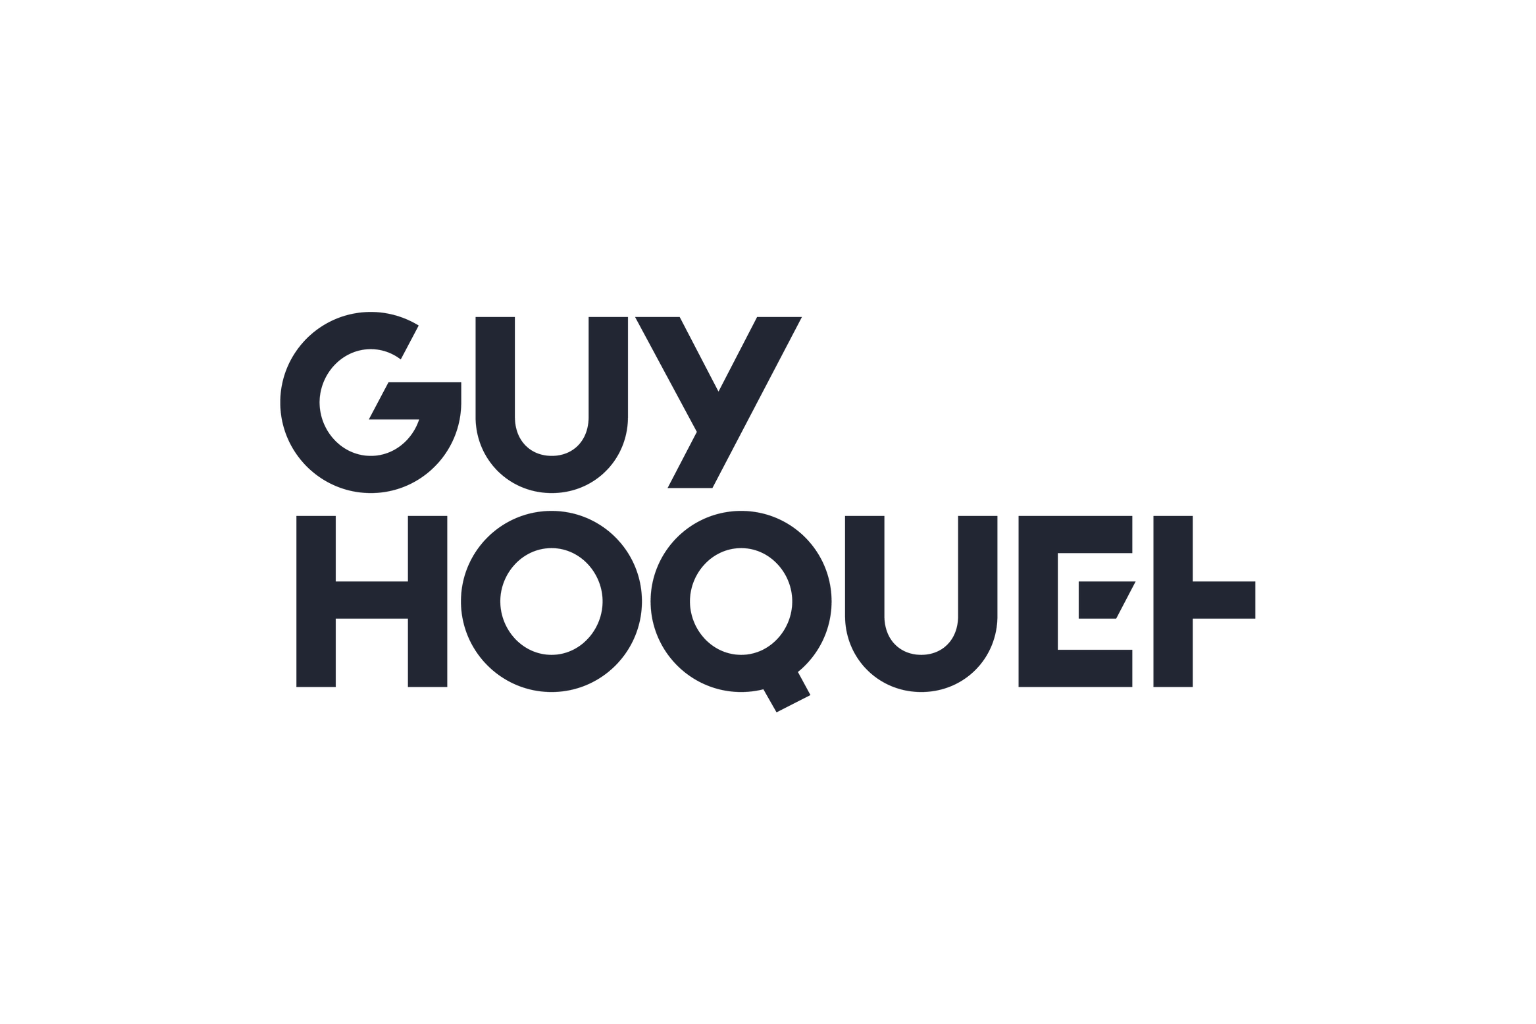 Guy_hoquet_logo